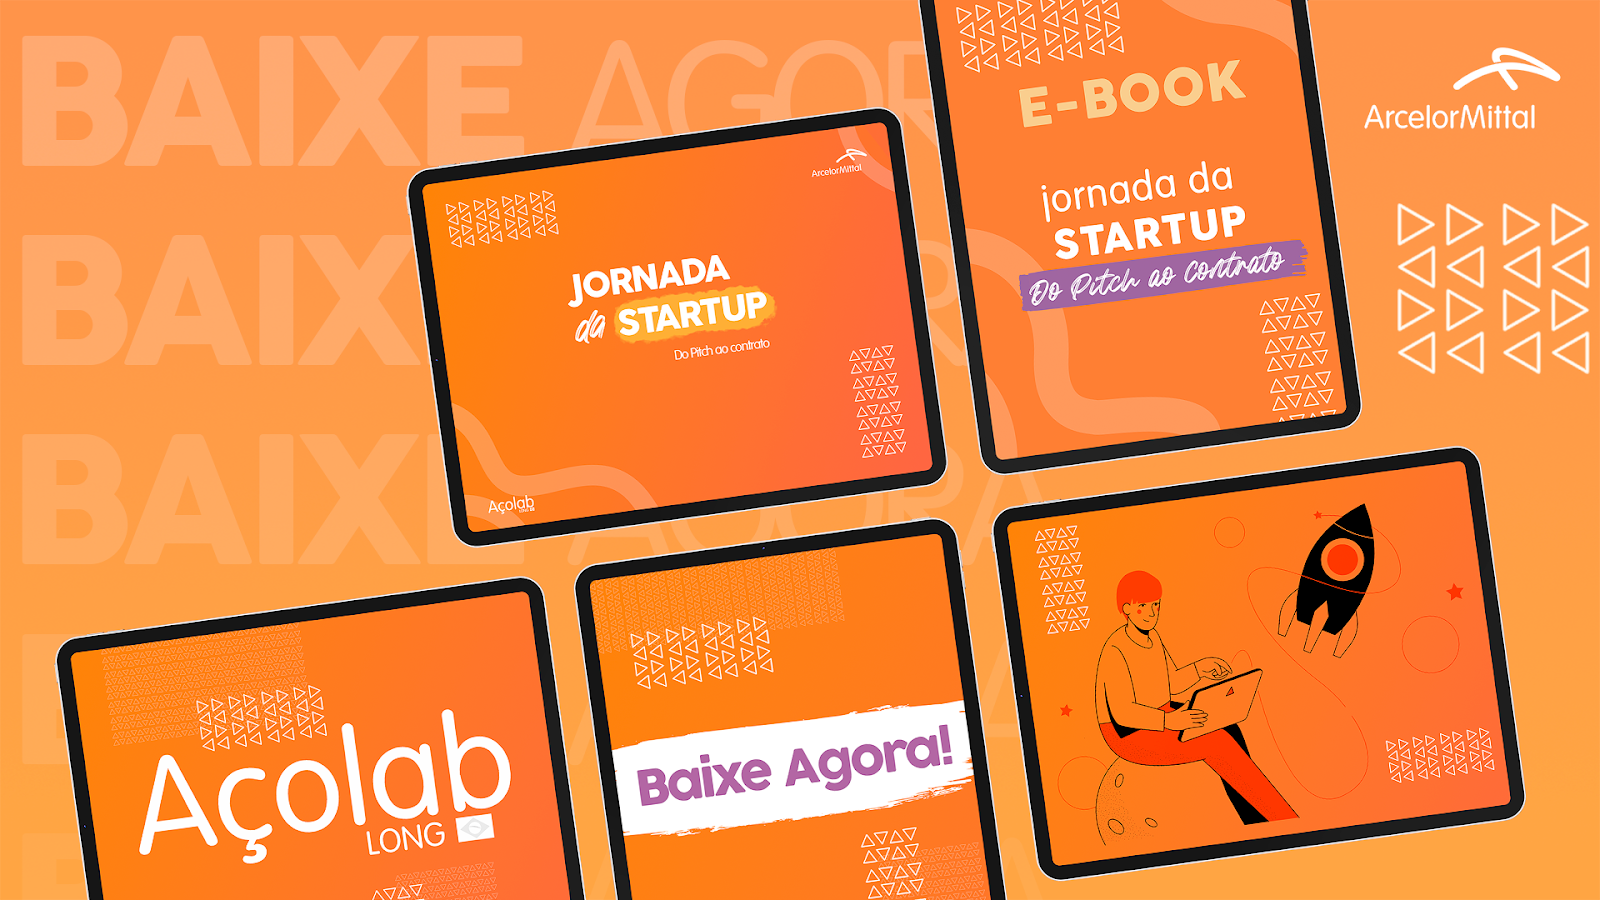 e-book jornada das startups